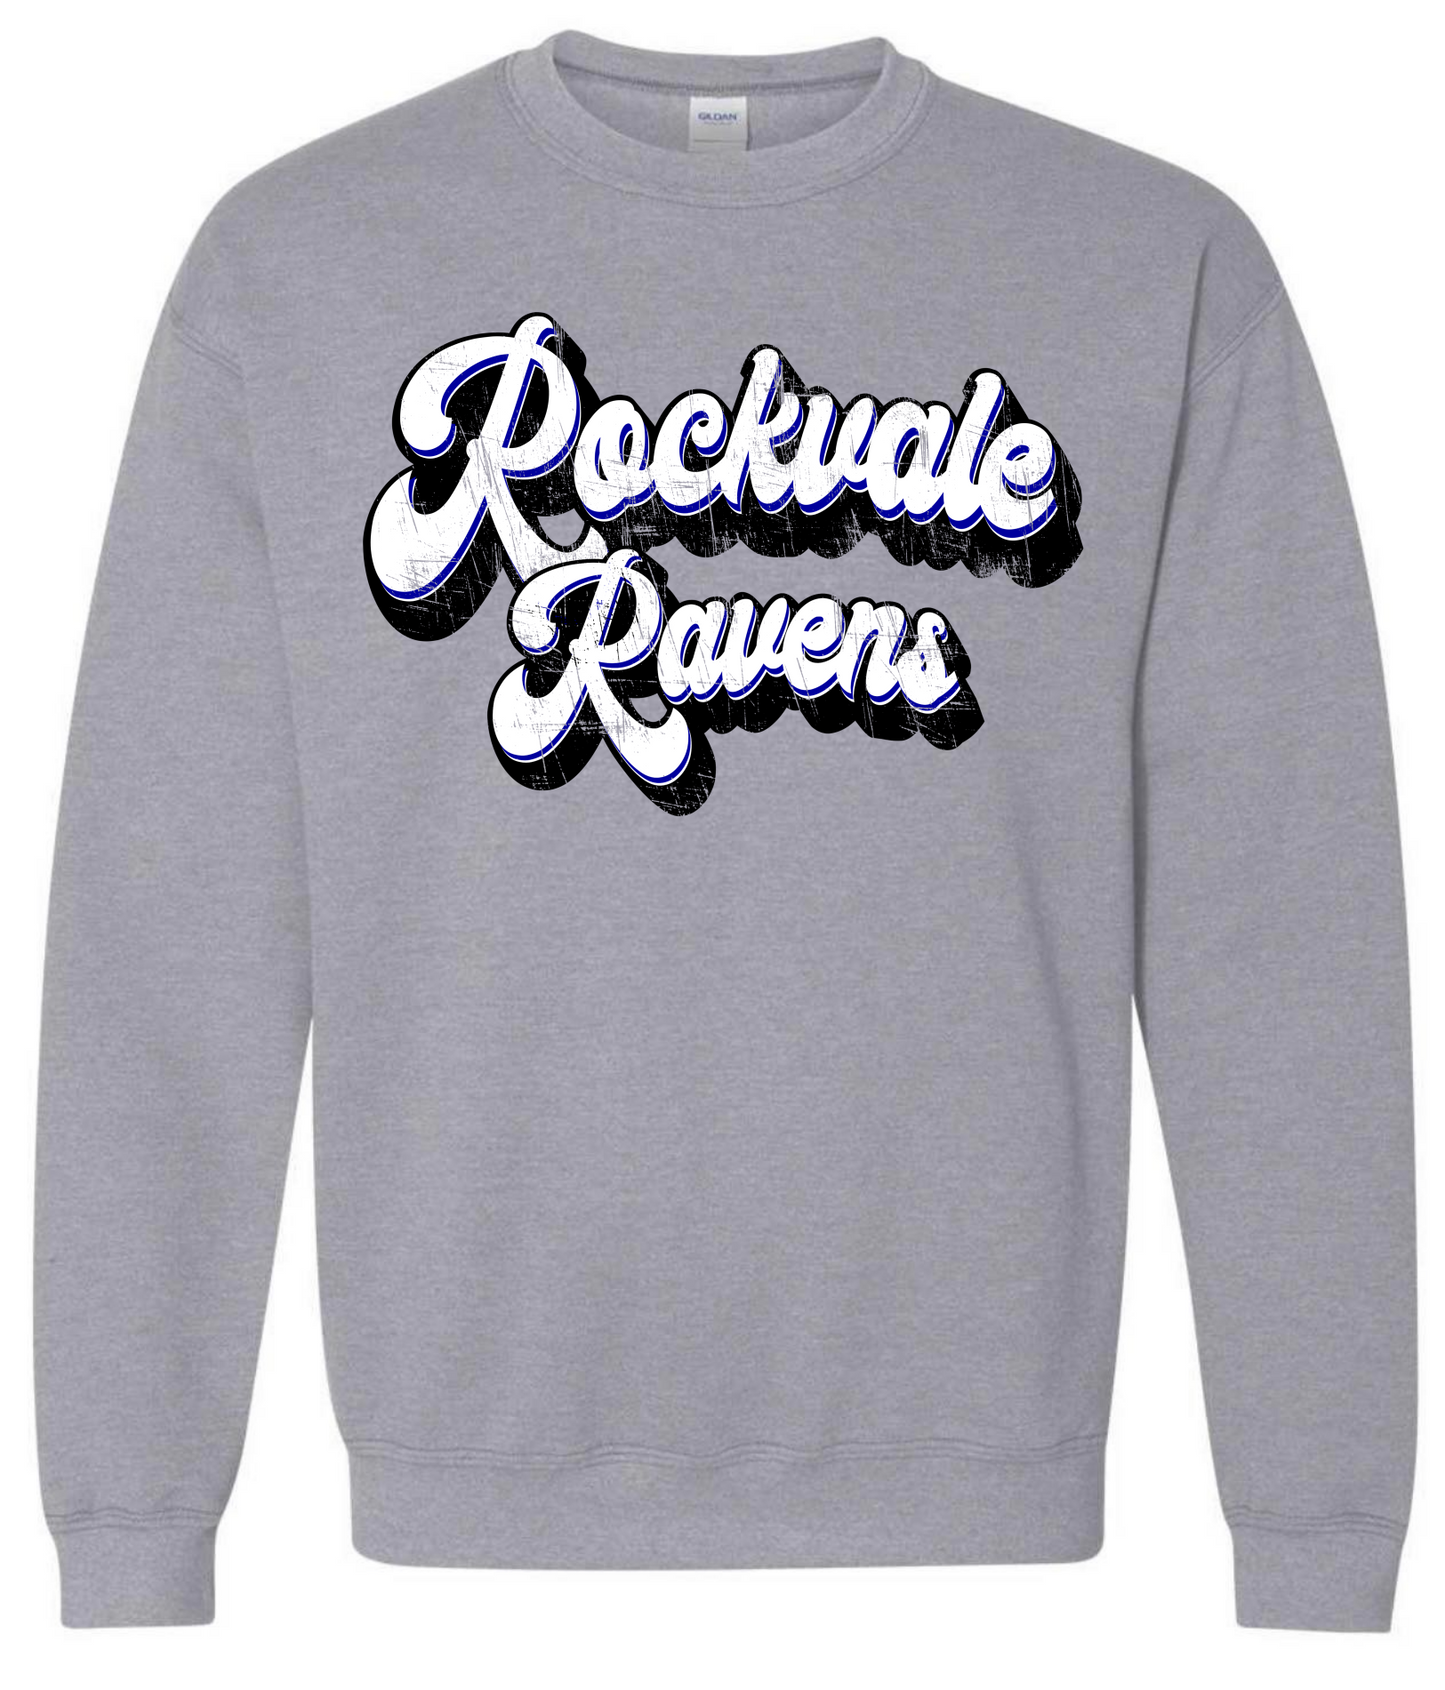 Distressed Rockvale Ravens Sweatshirt